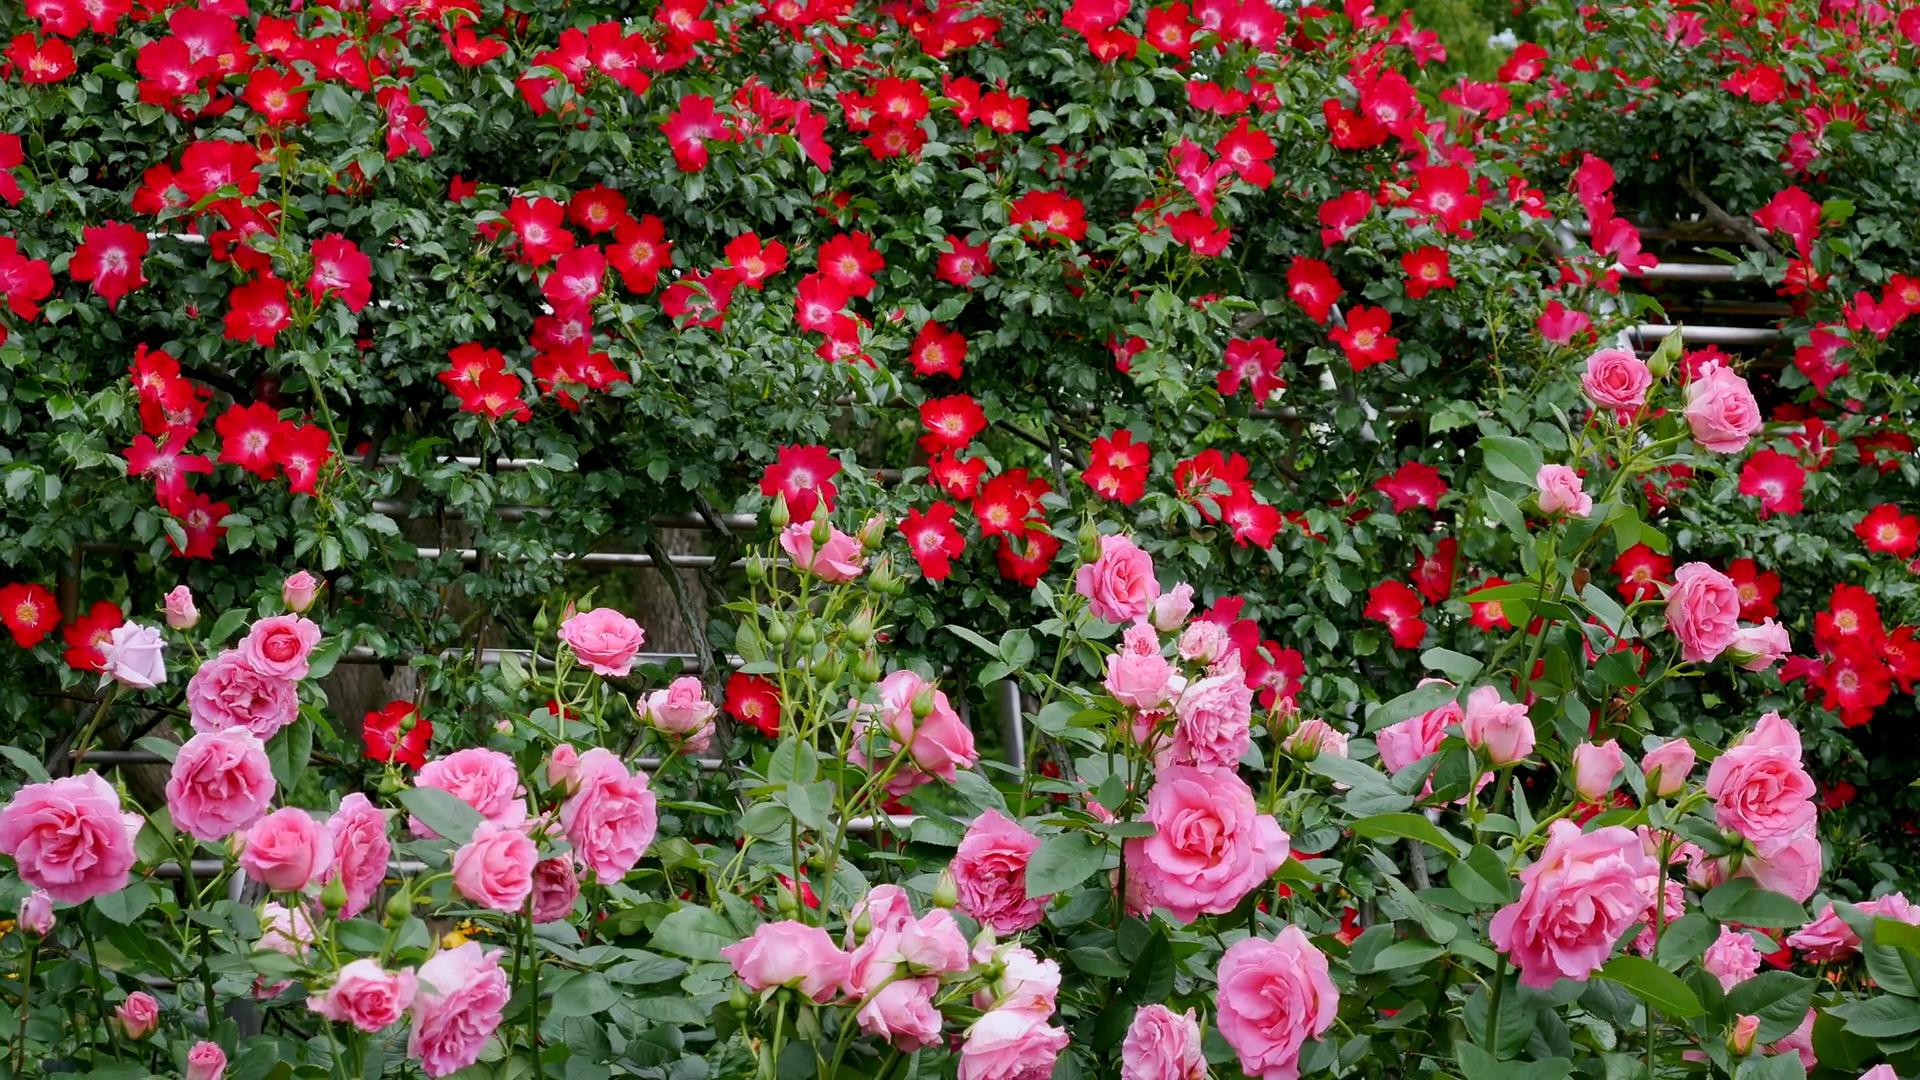 Đến thăm khu vườn trên đảo ở Nhật Bản với 2.600 cây hoa hồng rung rinh trước gió đẹp mê mẩn lòng người - Ảnh 12.